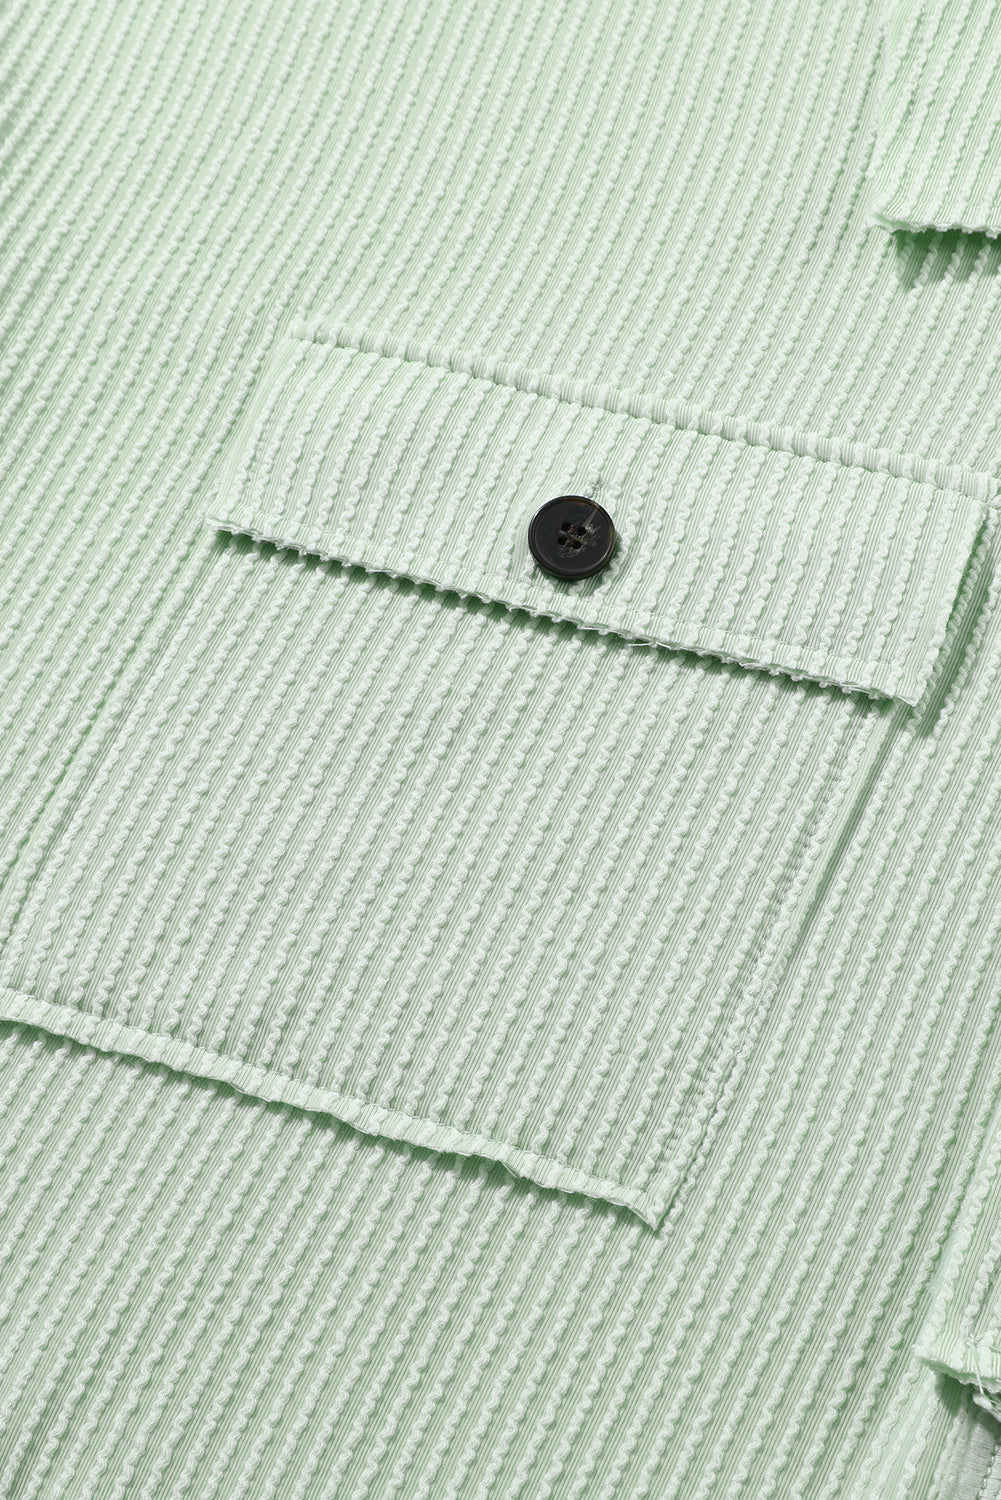 Grünes Henley-Oberteil mit gerippten Taschen und langen Ärmeln in Übergröße